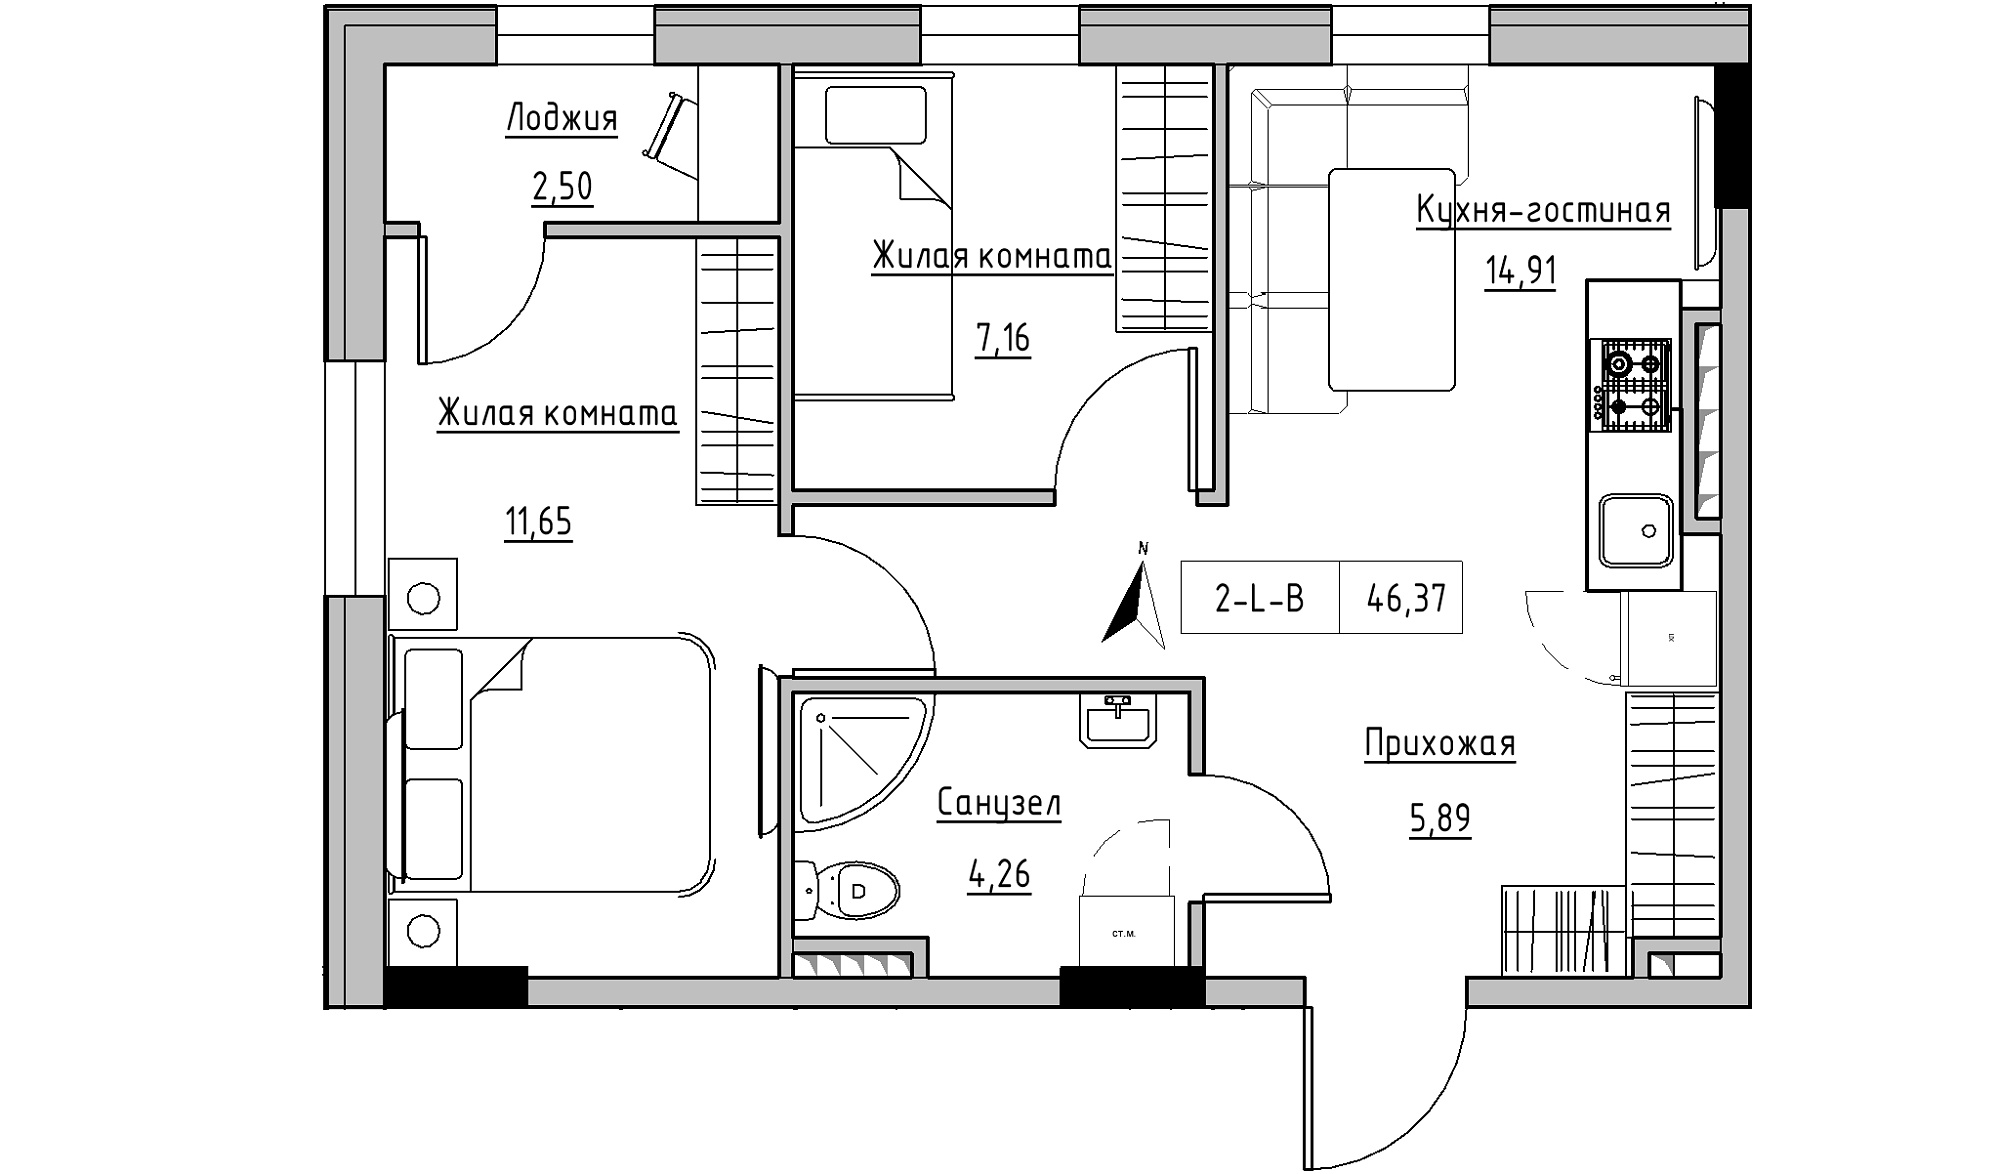 Планування 2-к квартира площею 46.37м2, KS-025-04/0006.